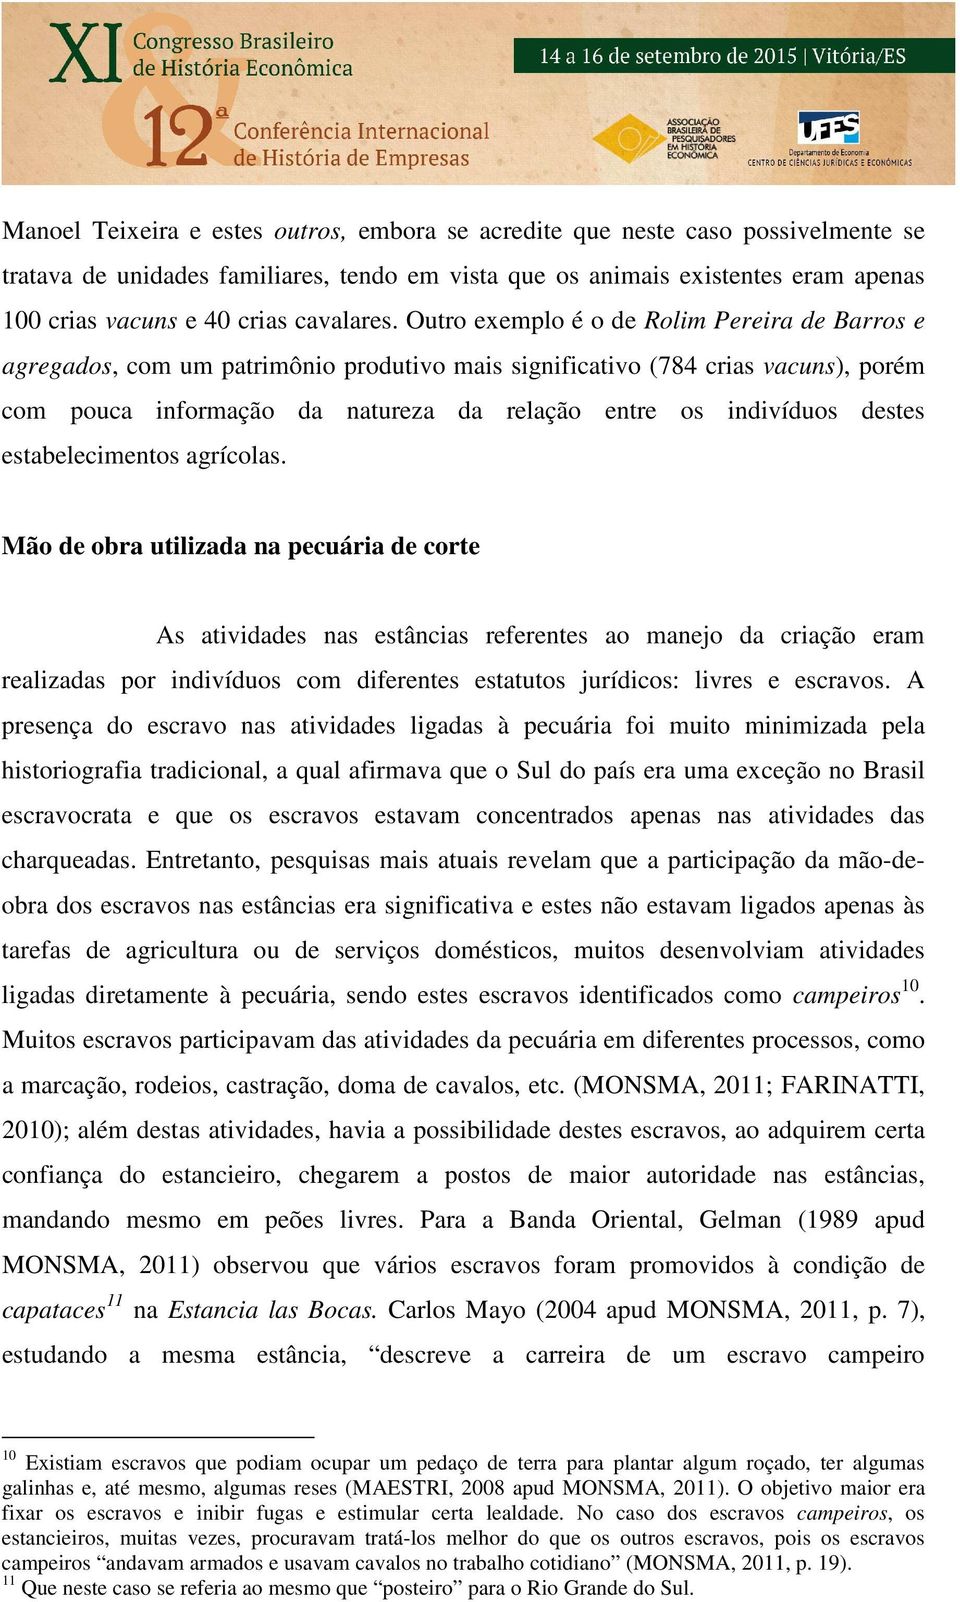 Outro exemplo é o de Rolim Pereira de Barros e agregados, com um patrimônio produtivo mais significativo (784 crias vacuns), porém com pouca informação da natureza da relação entre os indivíduos